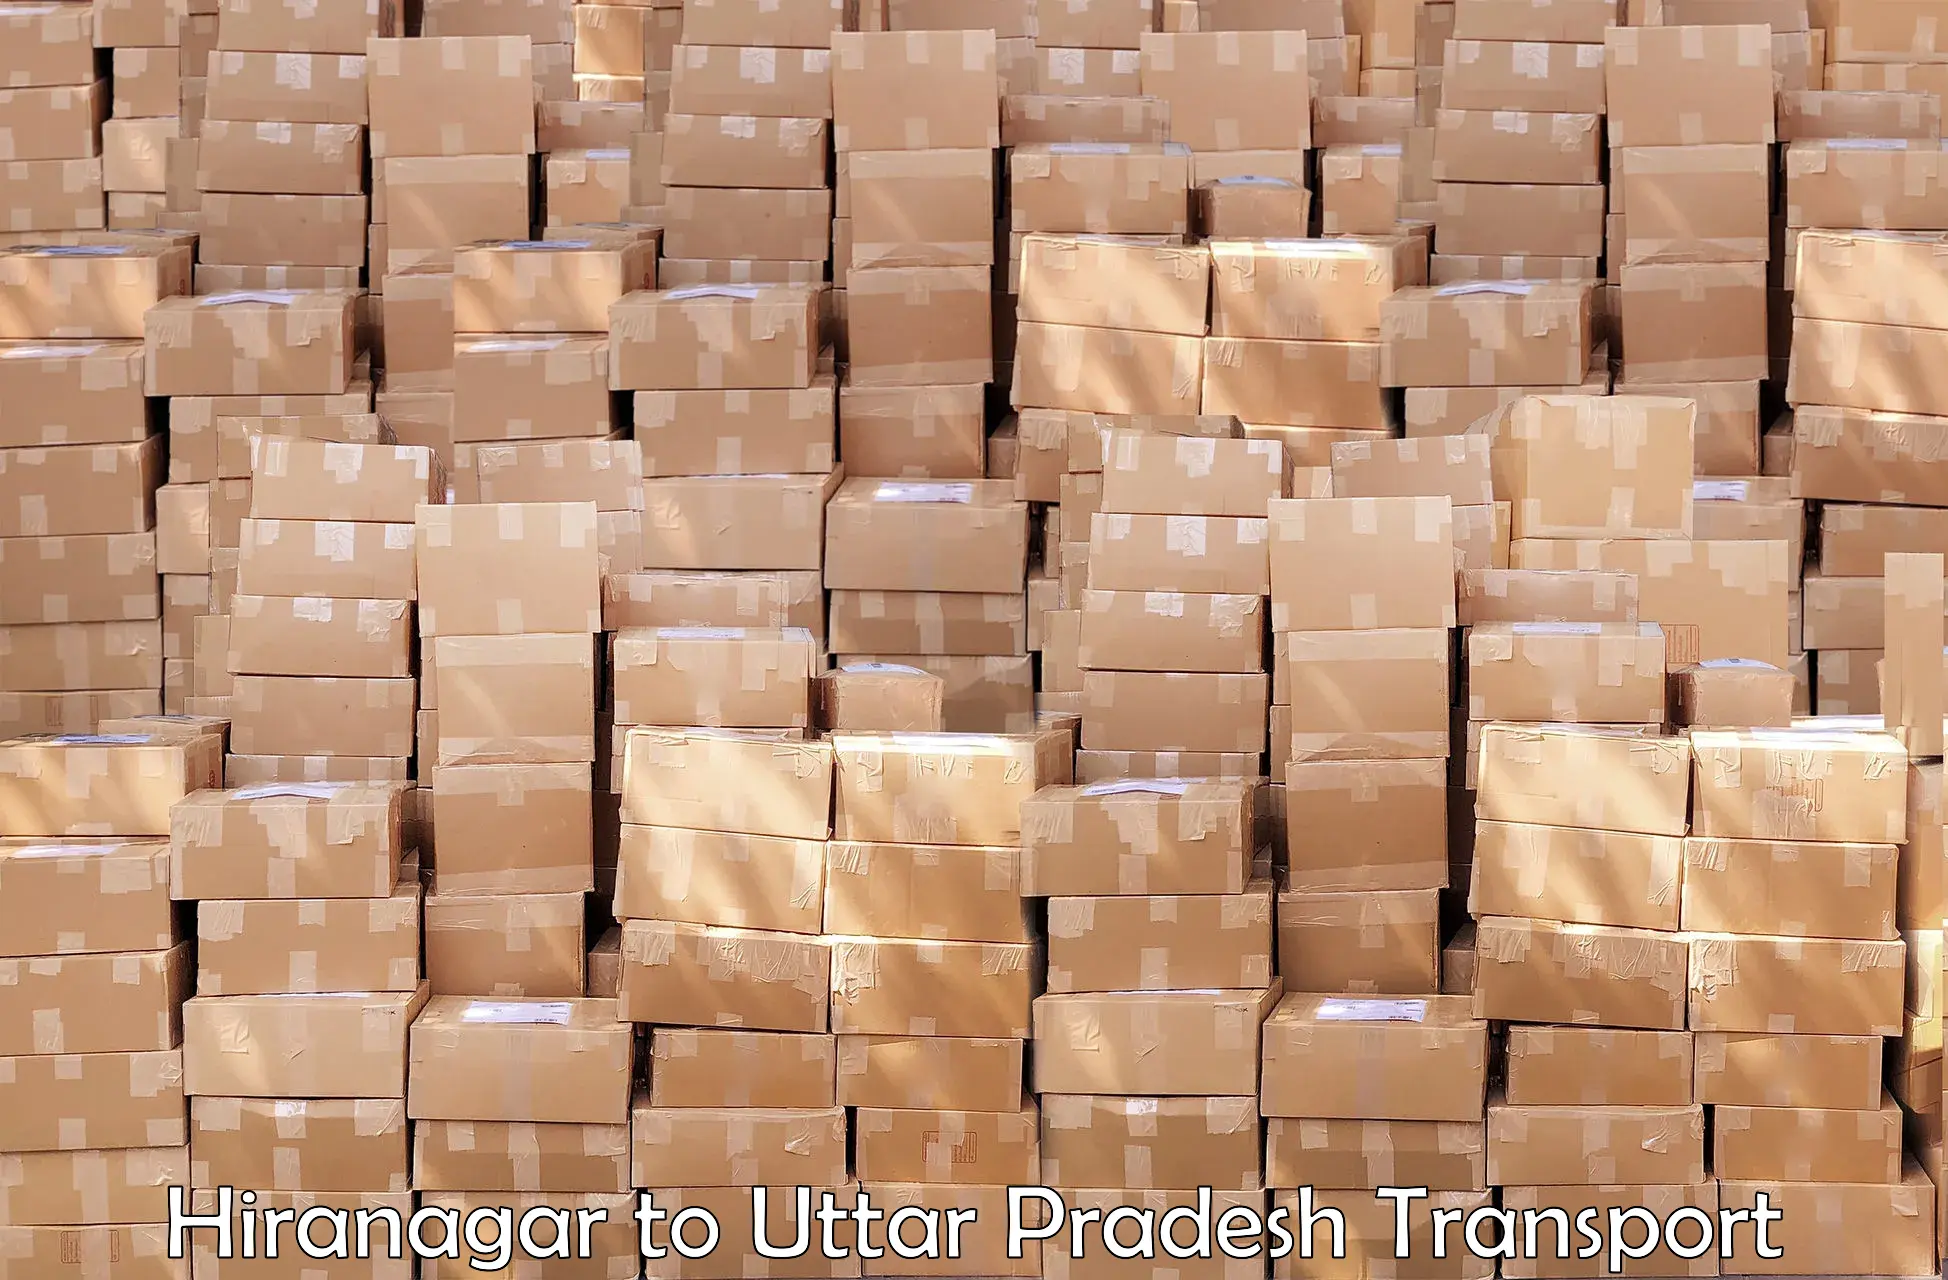 Cargo transportation services Hiranagar to Uttar Pradesh